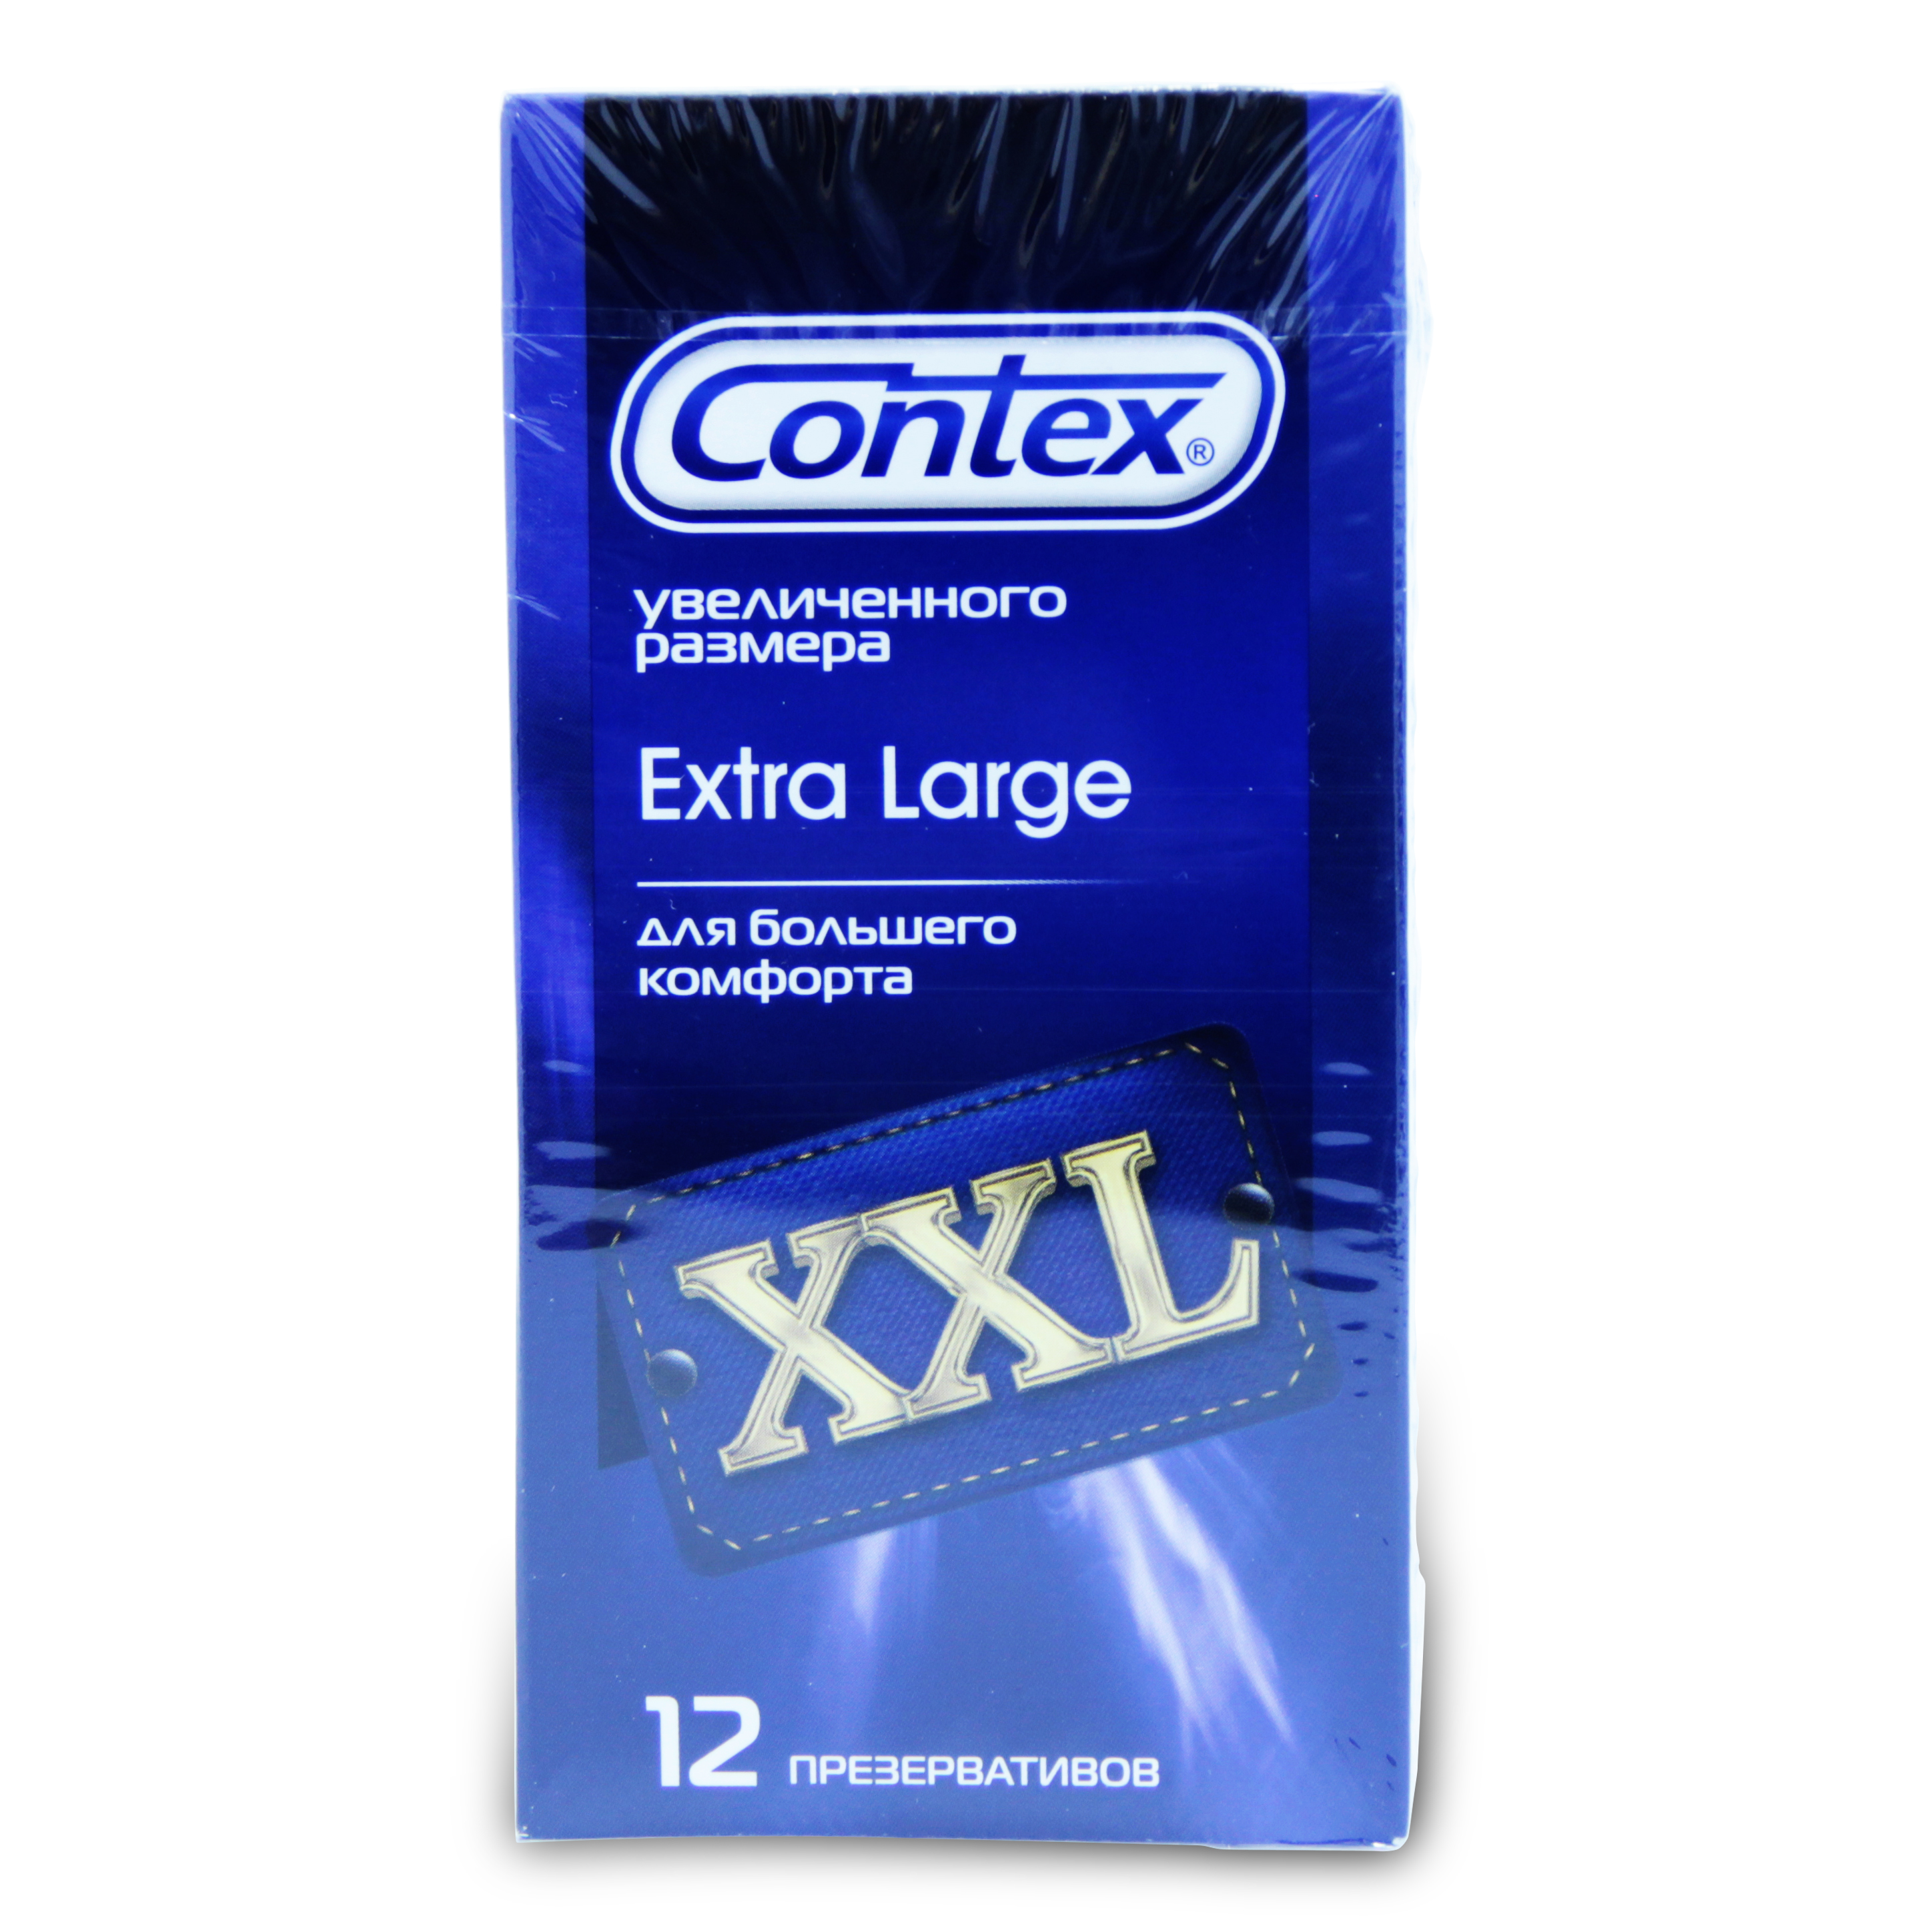   Wer.ru Contex [Контекс] Презервативы Extra large XXL увеличенного размера 12 шт.